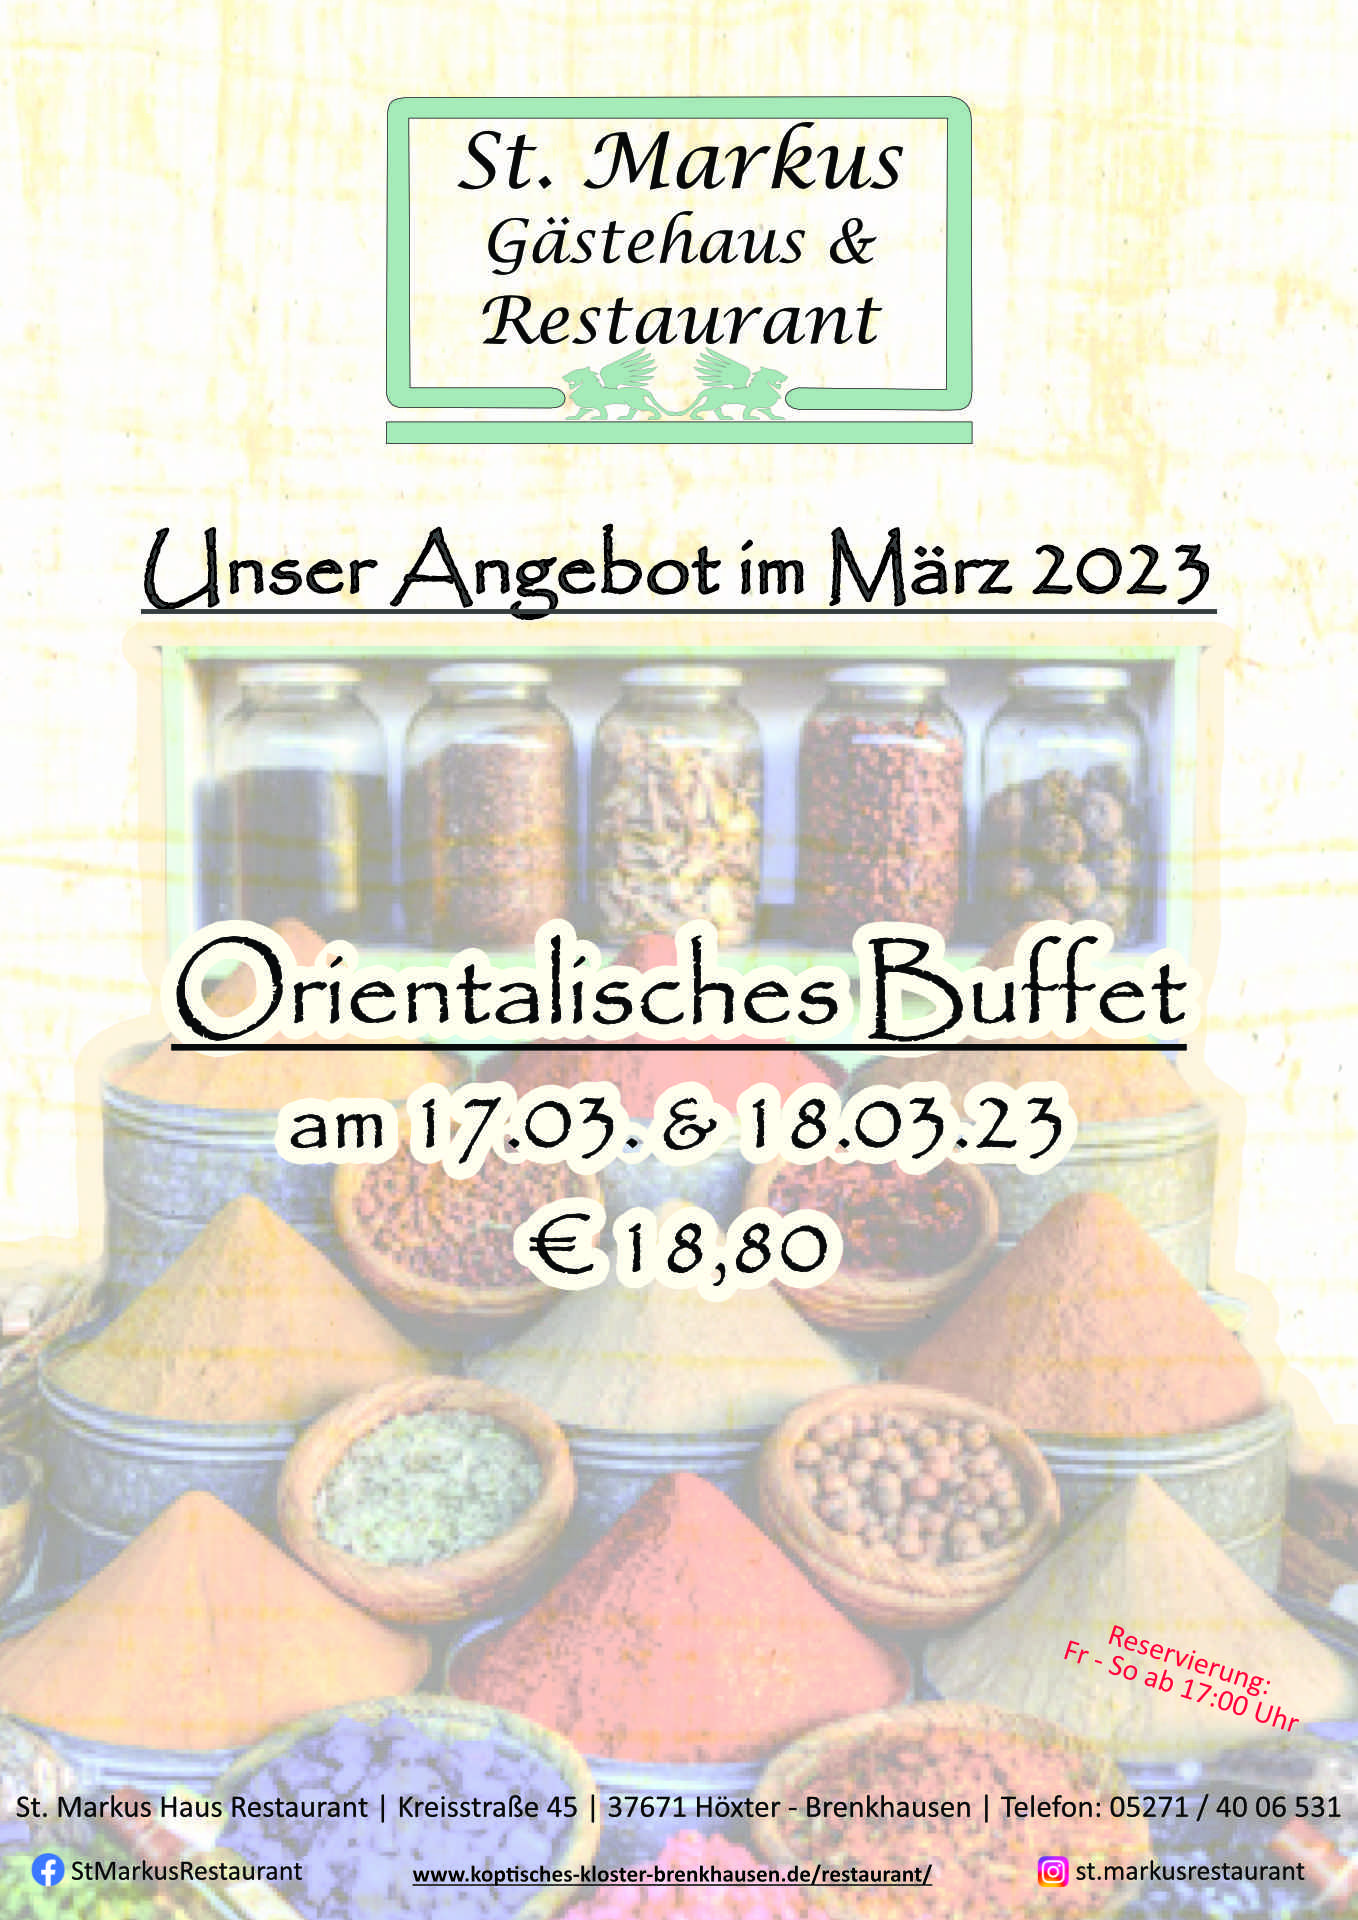 St. Markus Restaurant-Angebot im März 2023